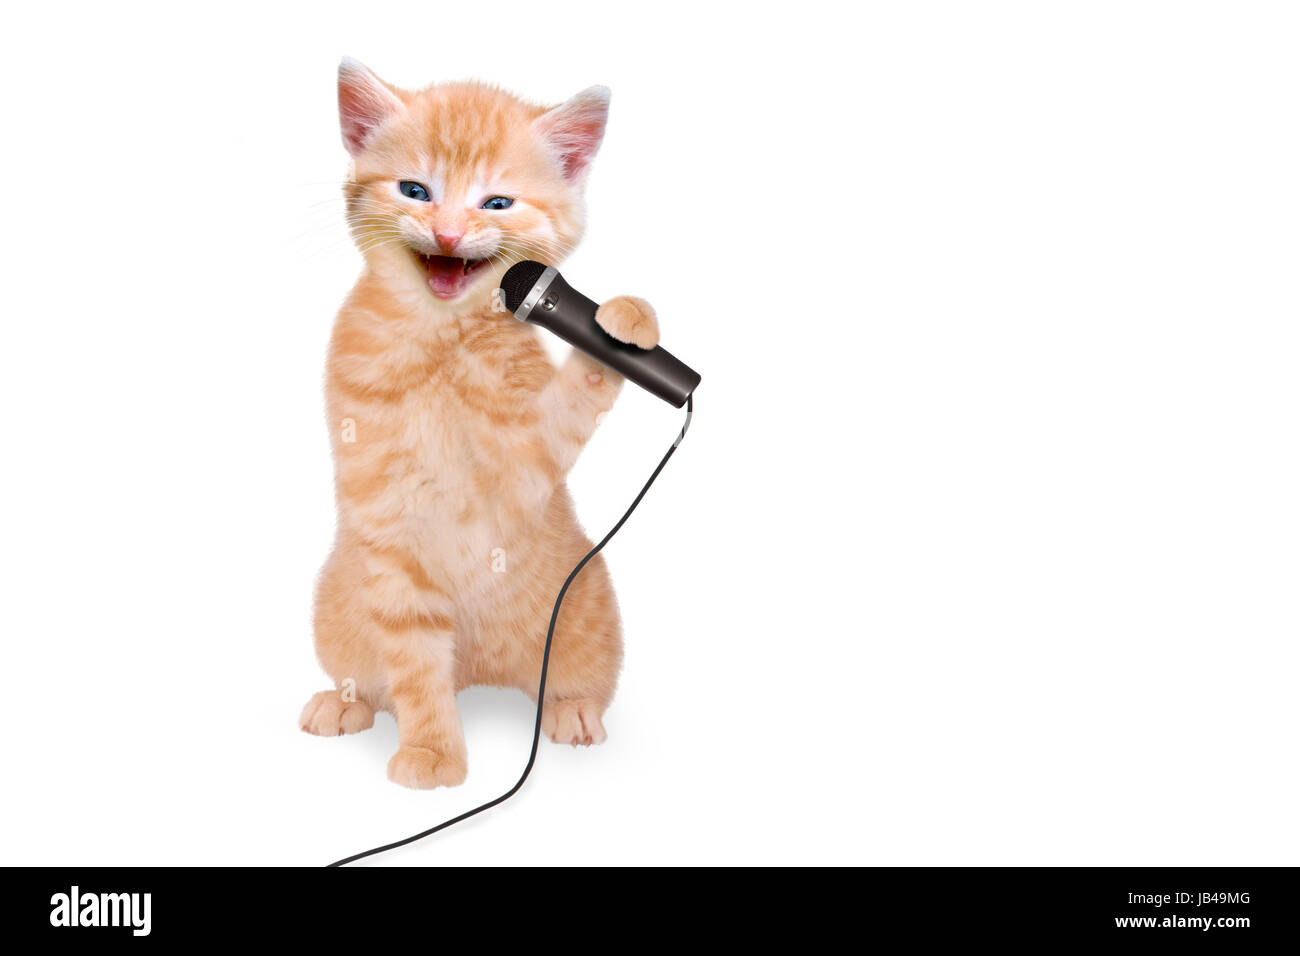 Звук пылесоса слушать громко для котов. Котик с микрофоном. Микро кот. Кошка поет в микрофон.